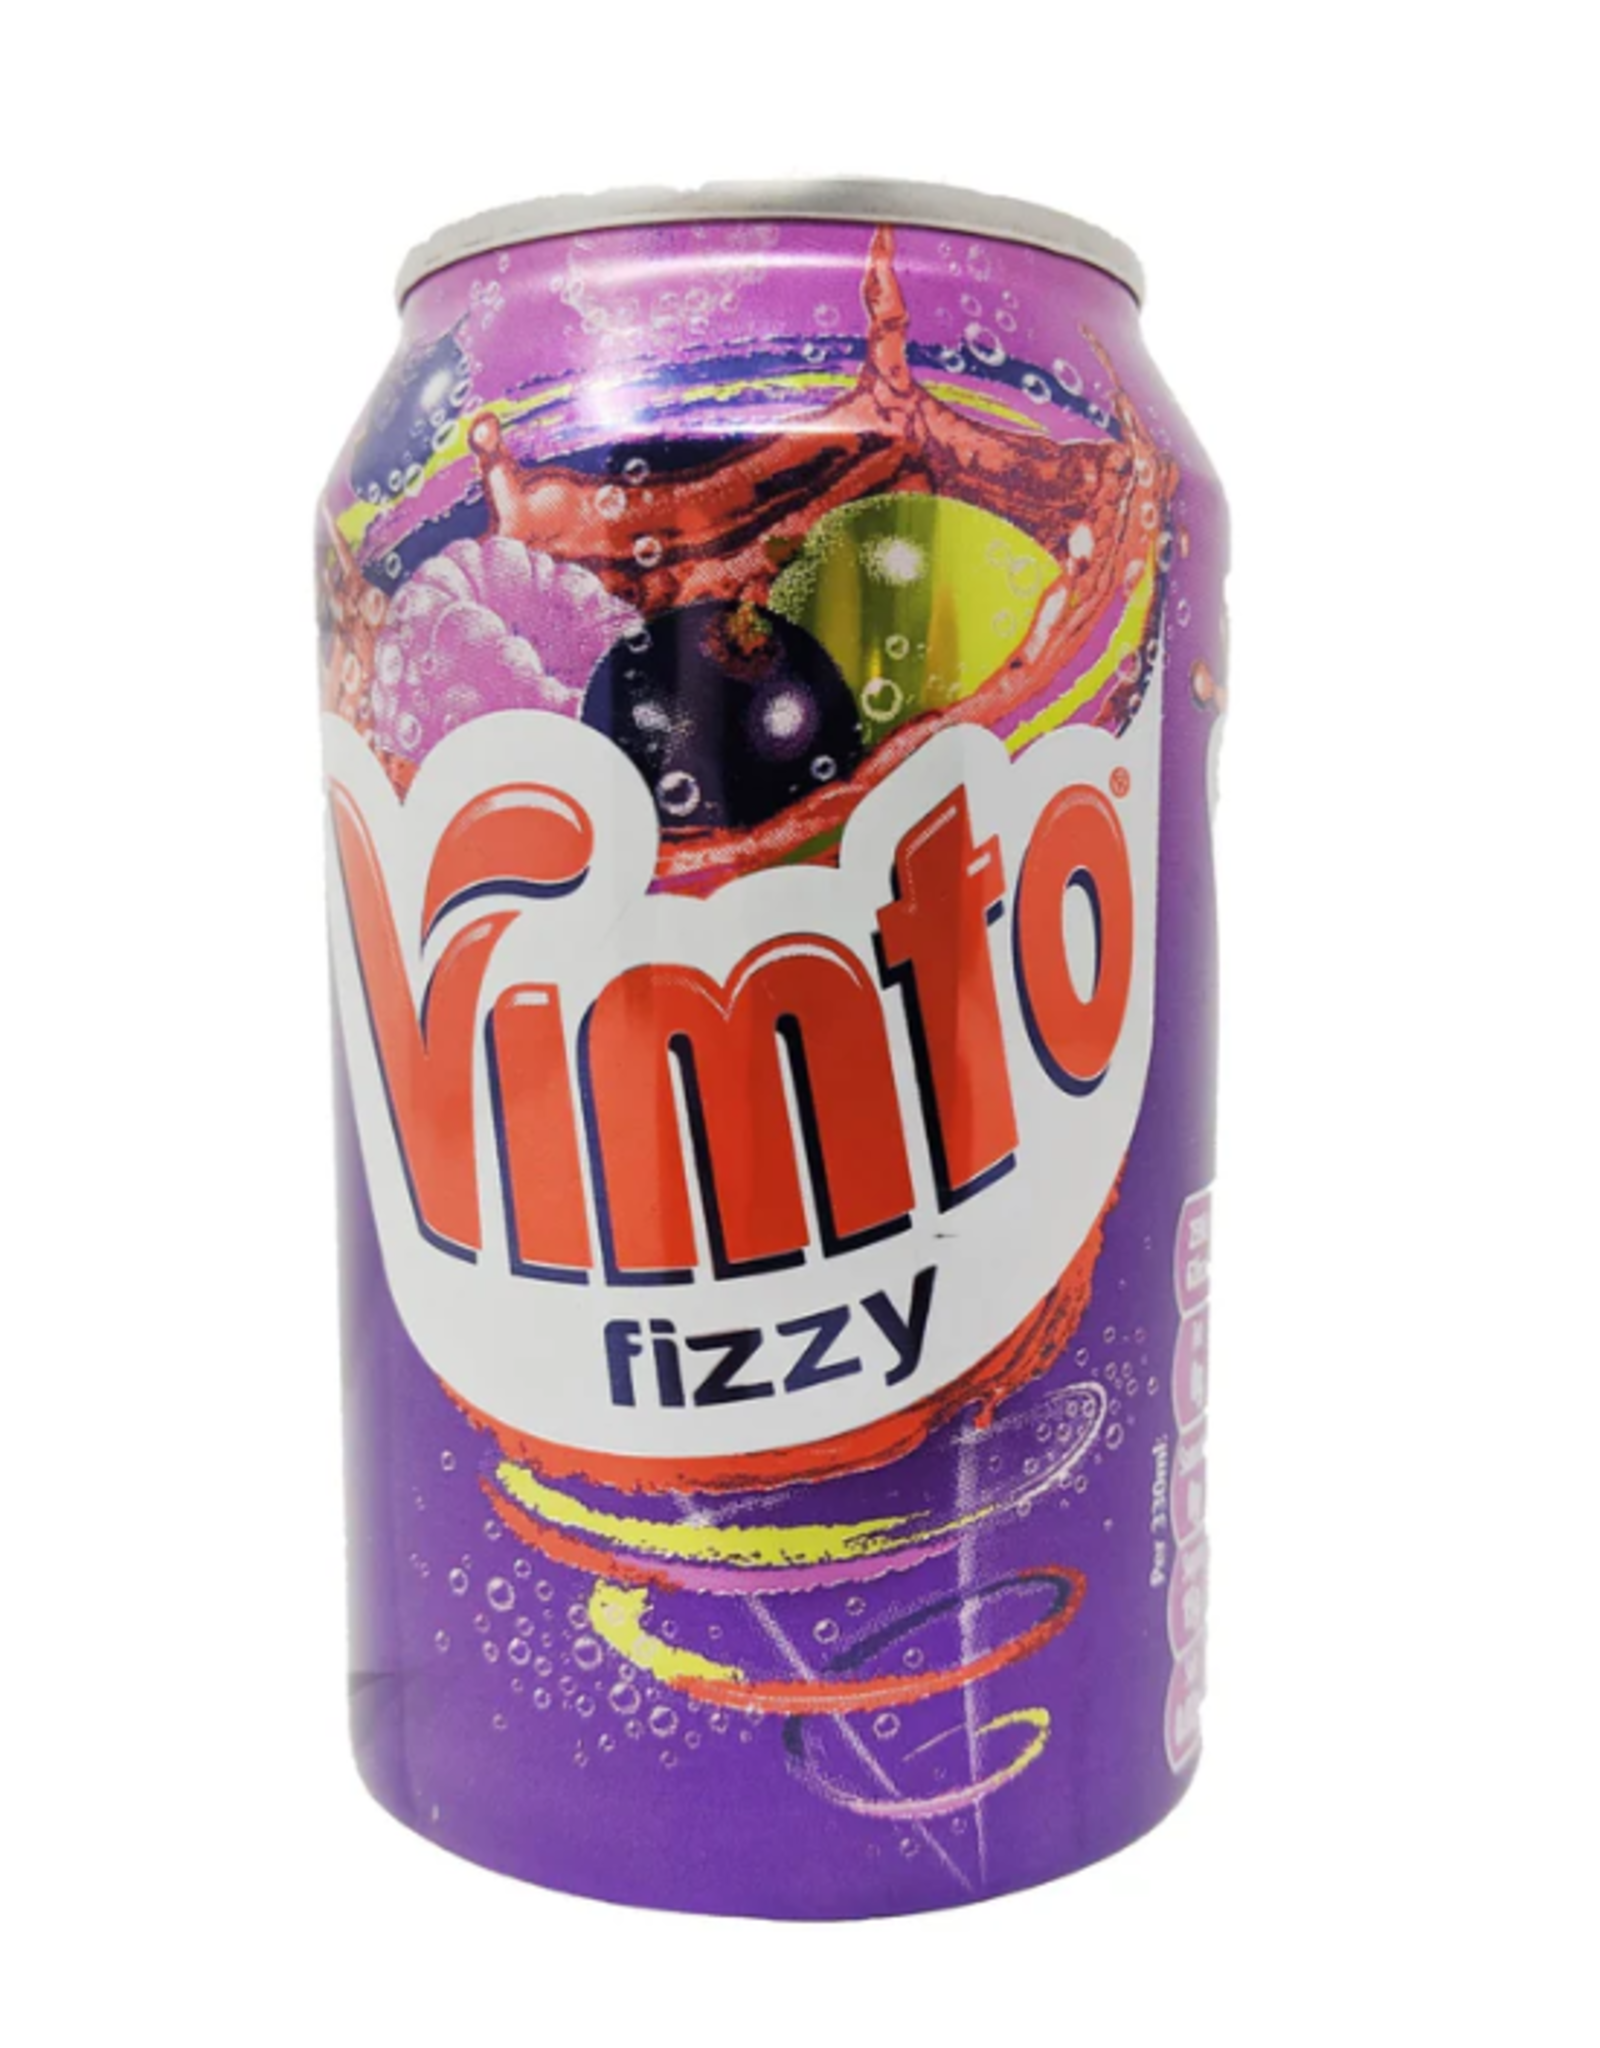 Vimto Original (British)